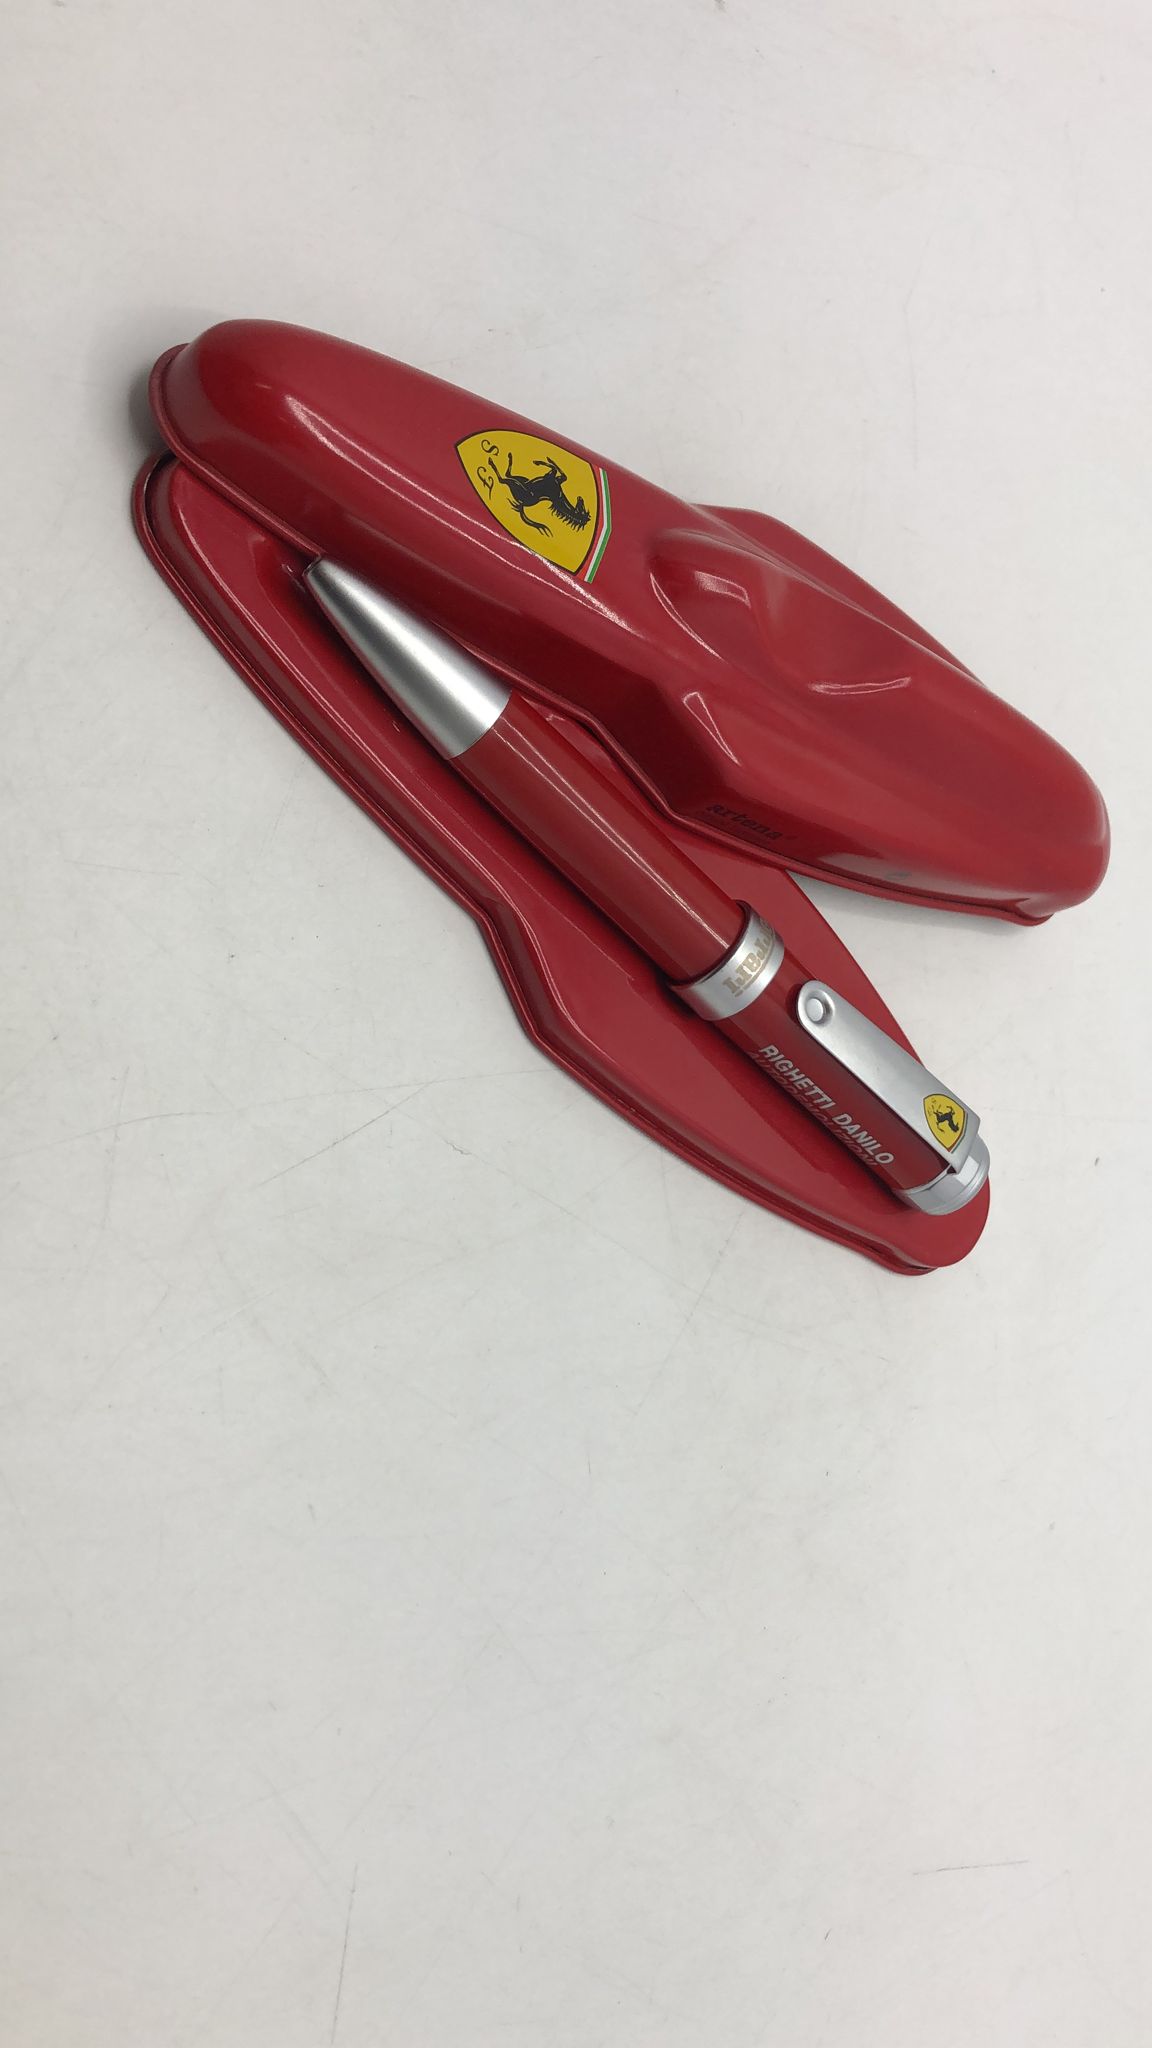 Penna Ferrari Artena